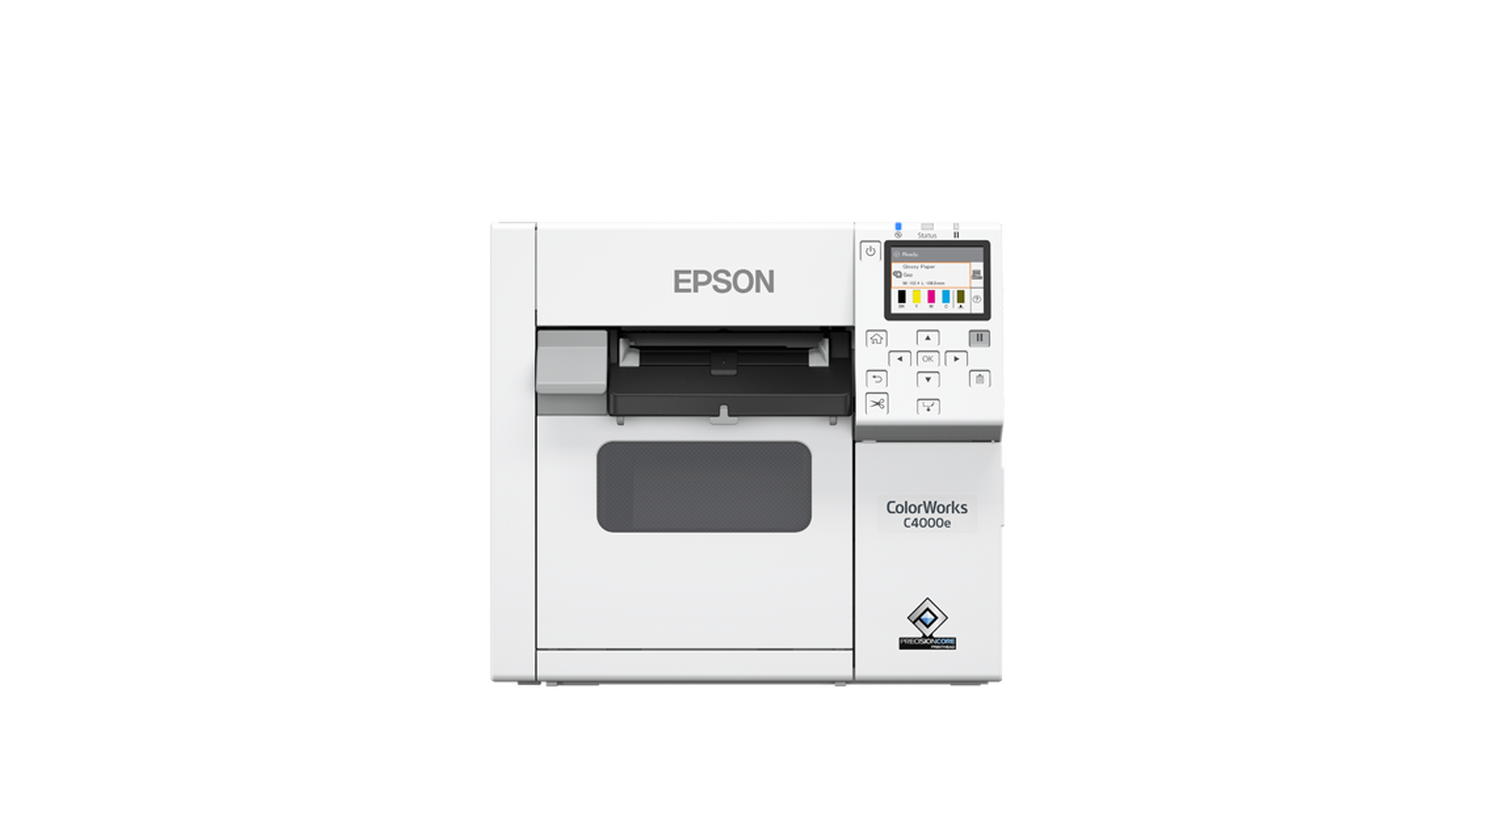 Stampante Epson C4000e